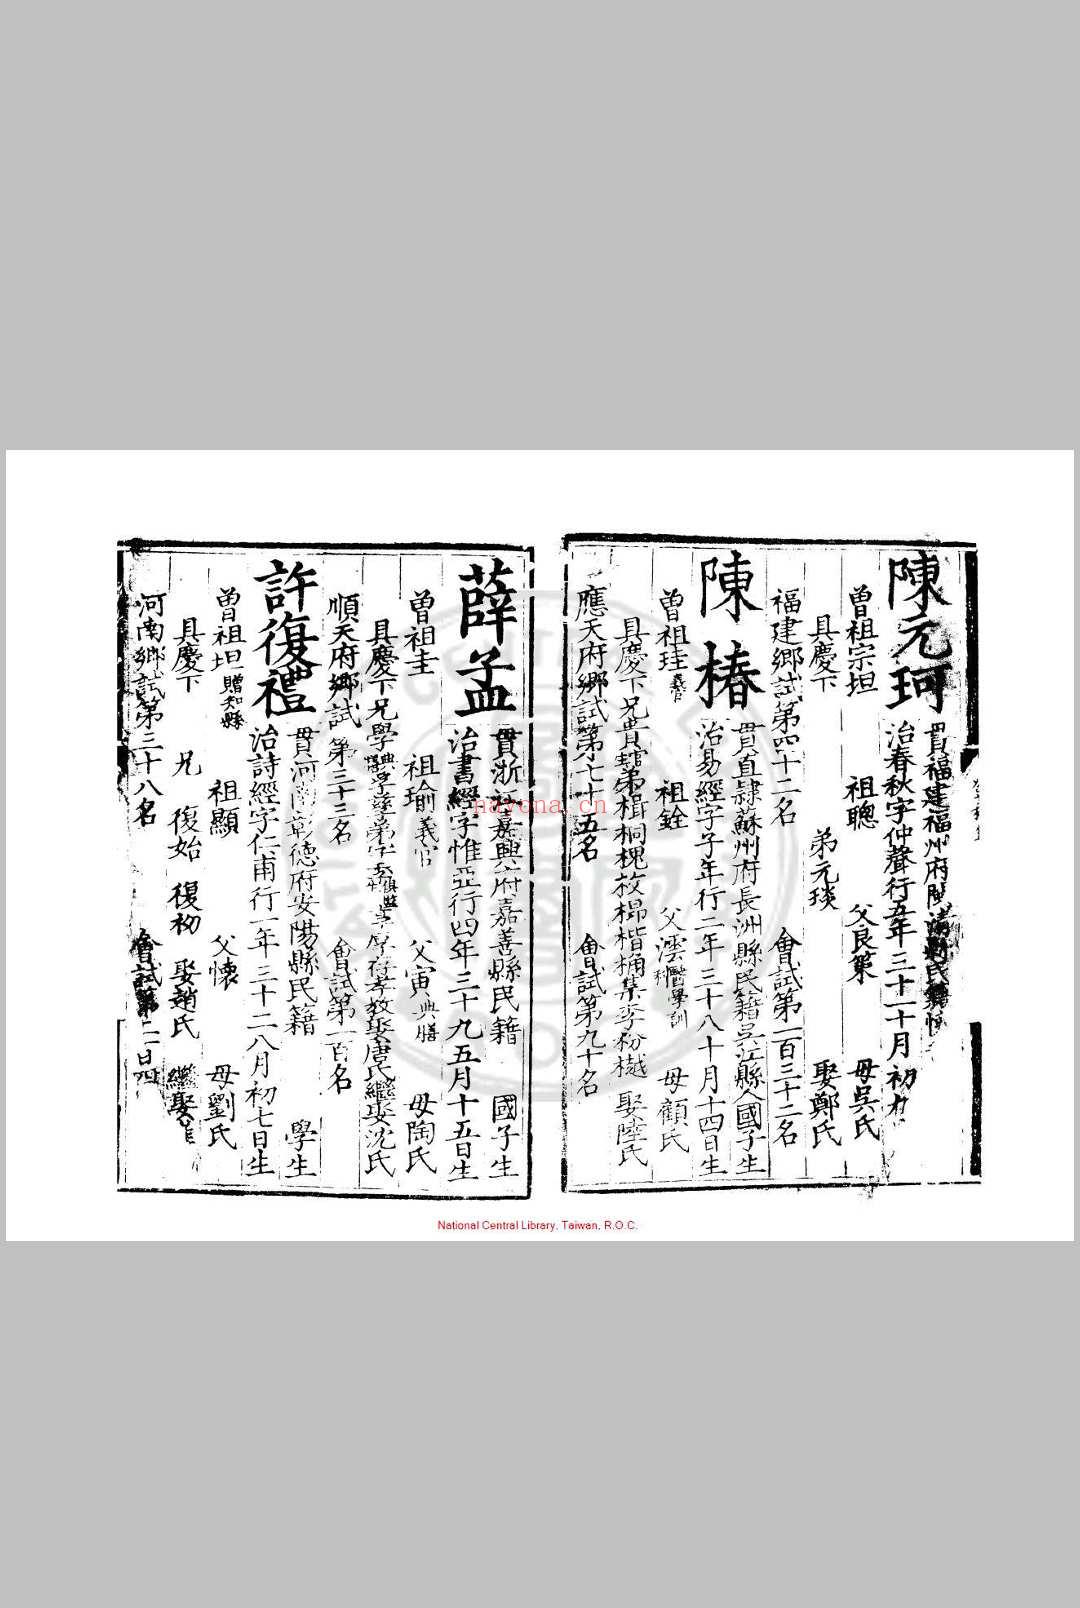 嘉靖十四年进士登科录 (明)夏言编 明嘉靖间(1522-1566)刊本 (嘉靖四十一年进士)